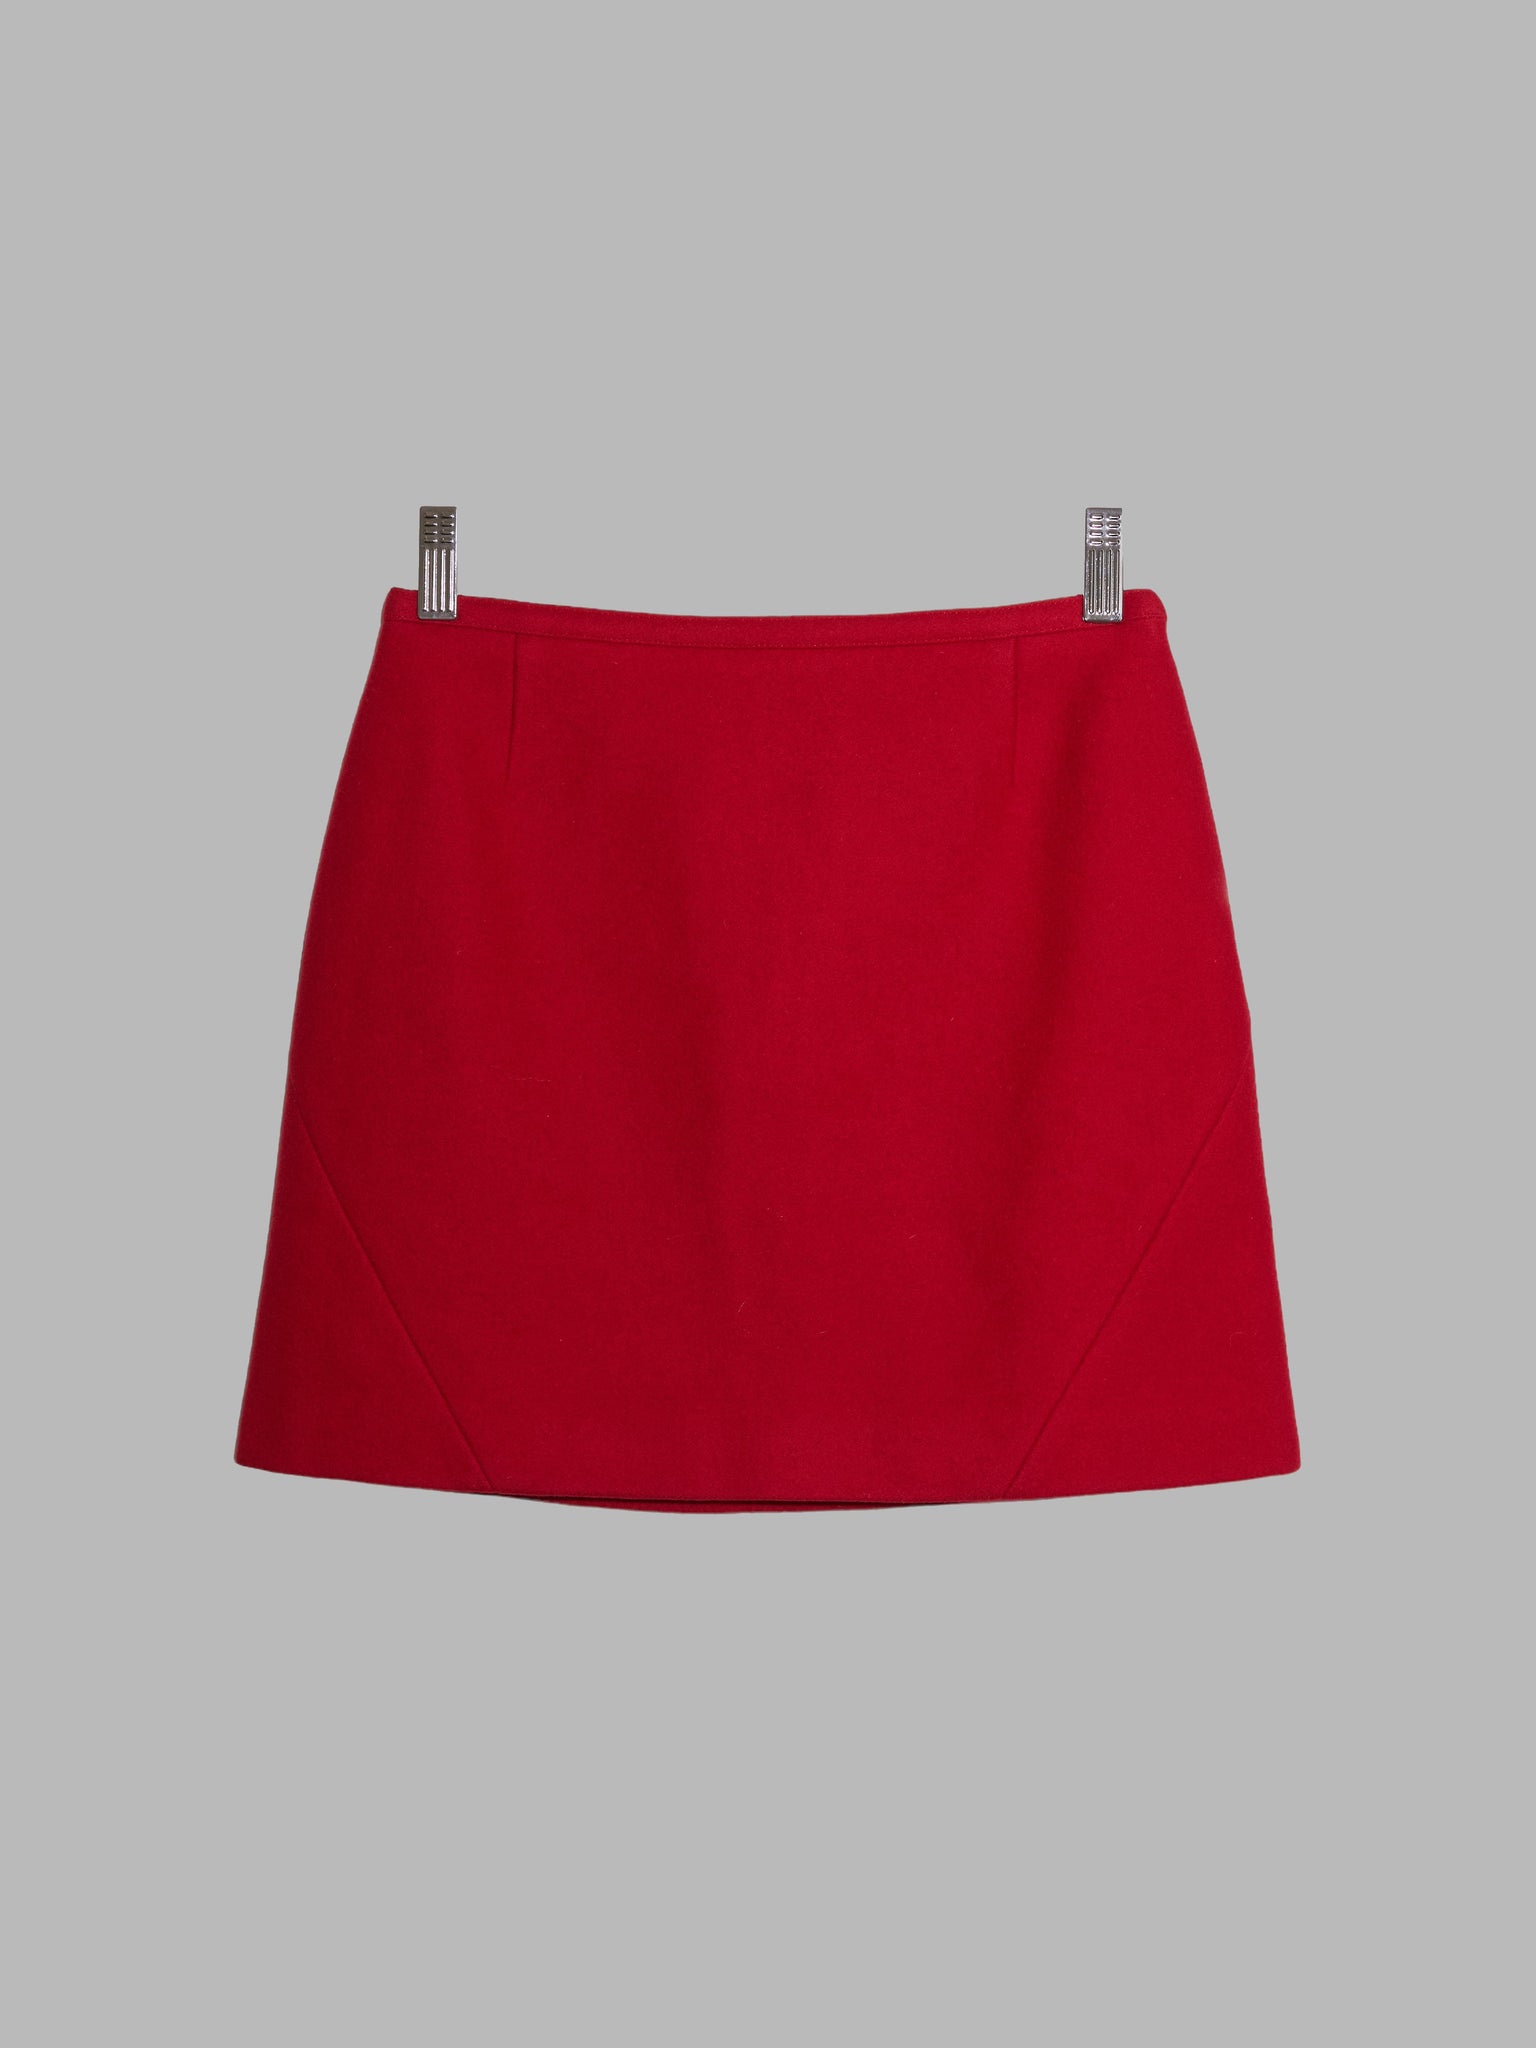 Miu Miu 1990s red melton wool miniskirt - size IT 38